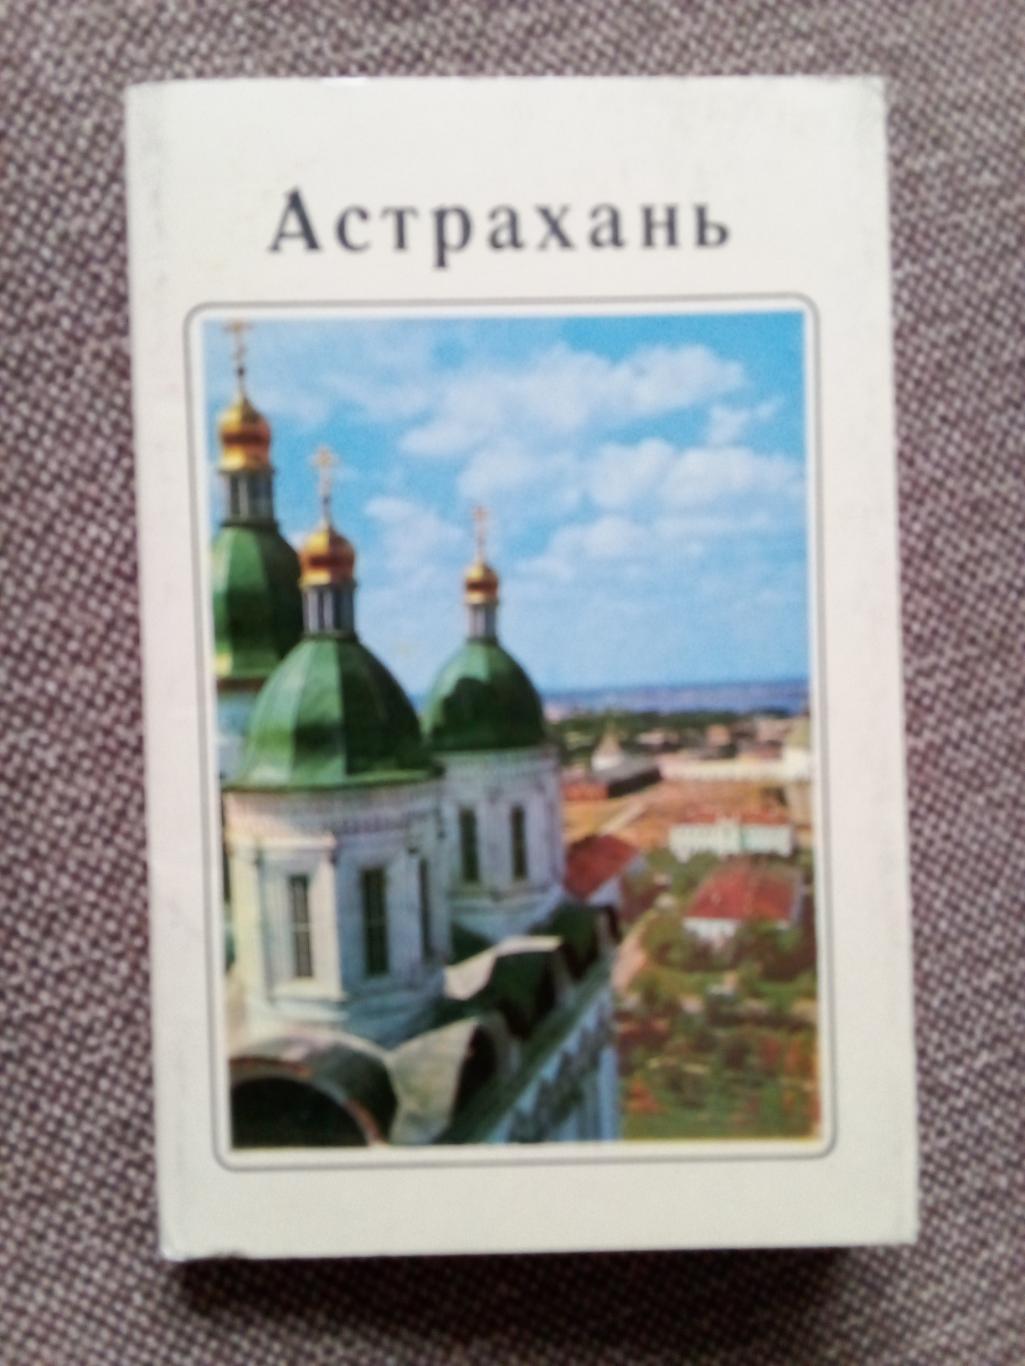 Города СССР : Астрахань 1970 г. полный набор - 15 открыток (чистые , в идеале)